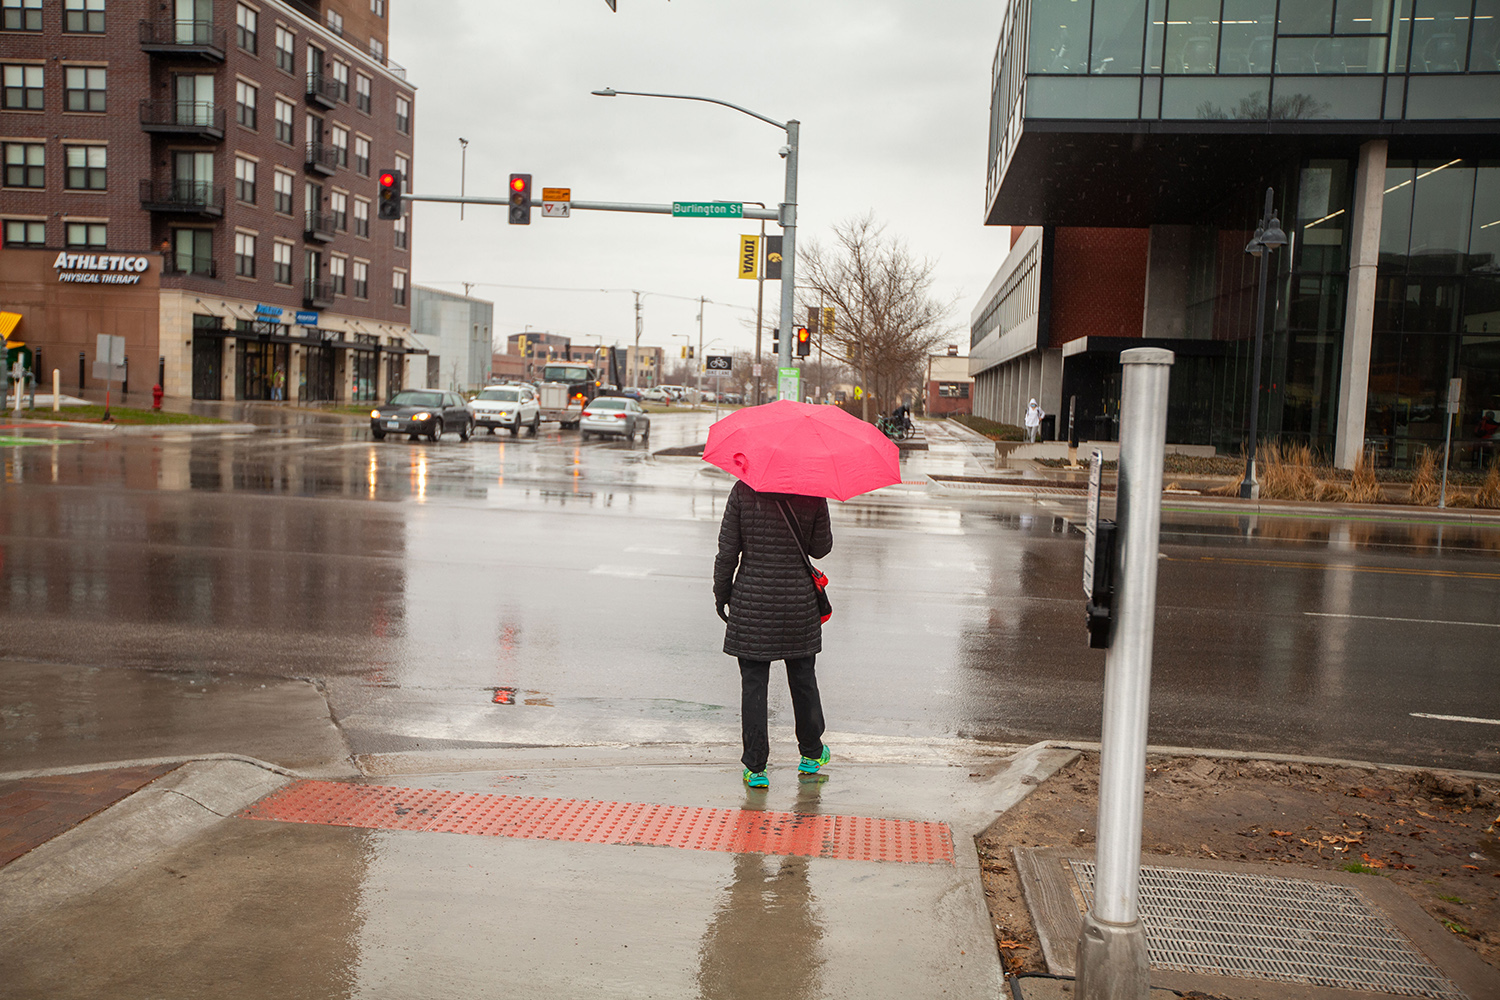 Featured photos: Rain, rain, go away - The Daily Iowan